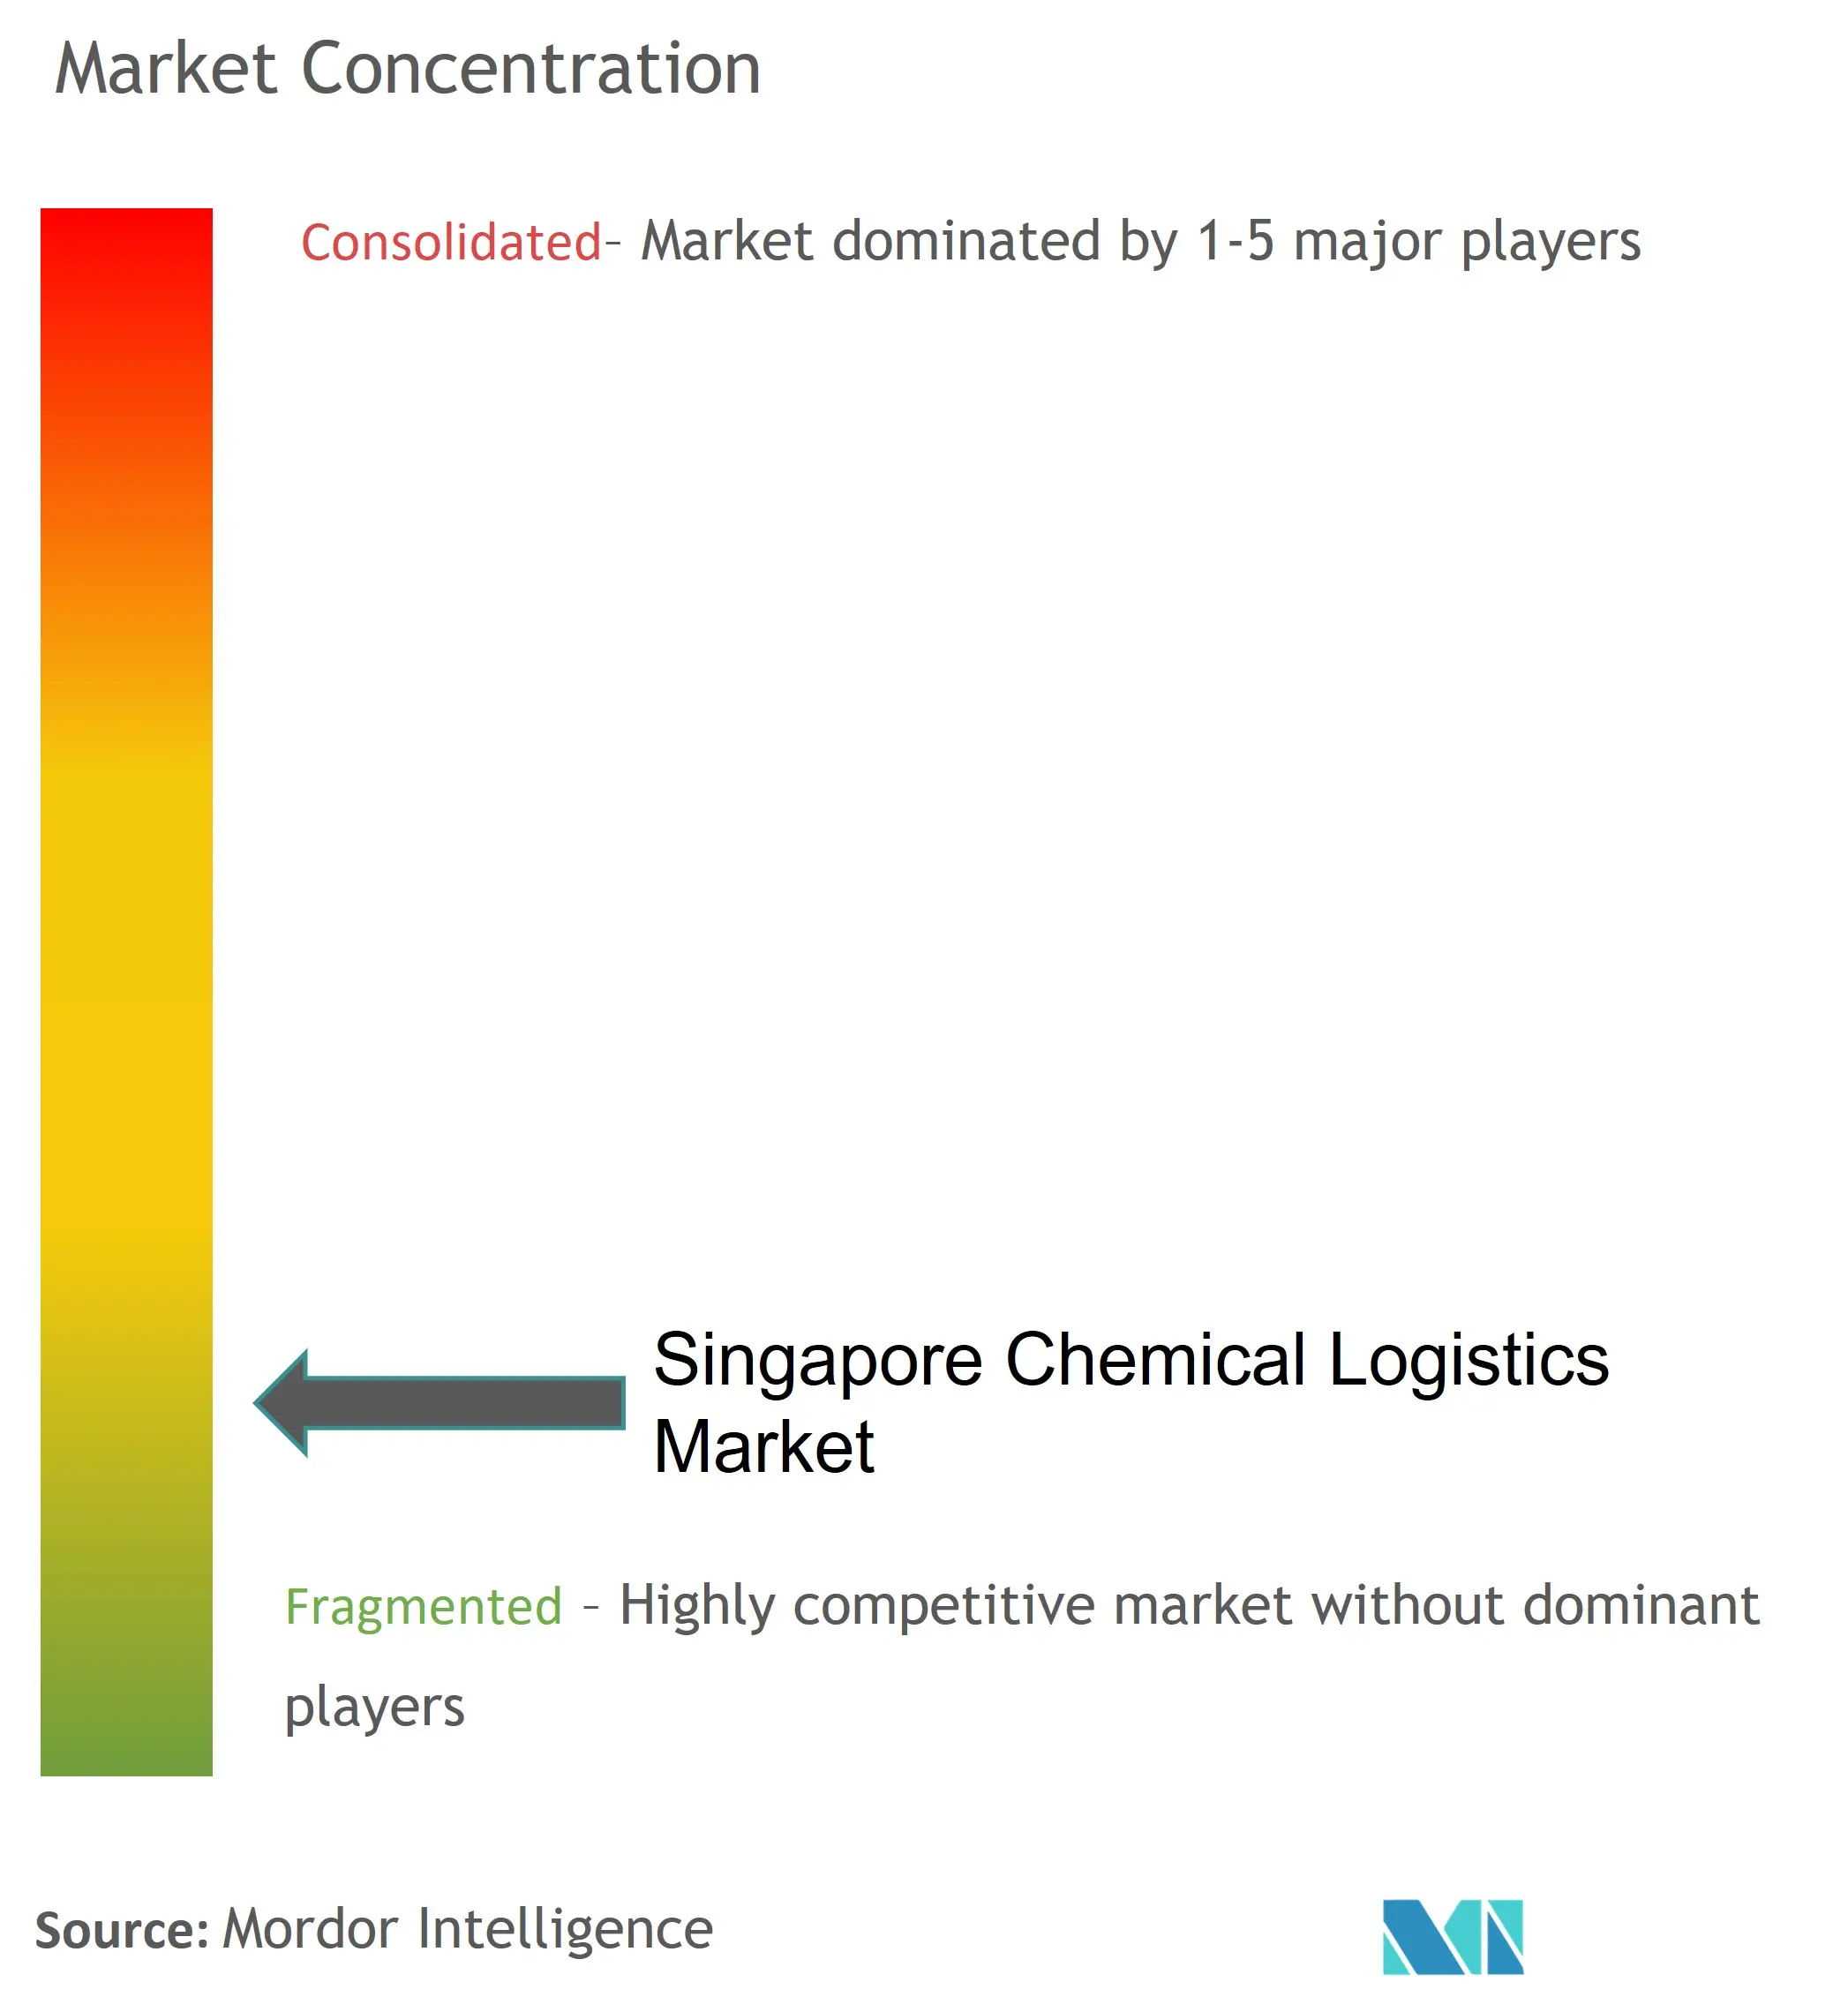 Singapore Chemical Logistics Market Concentration